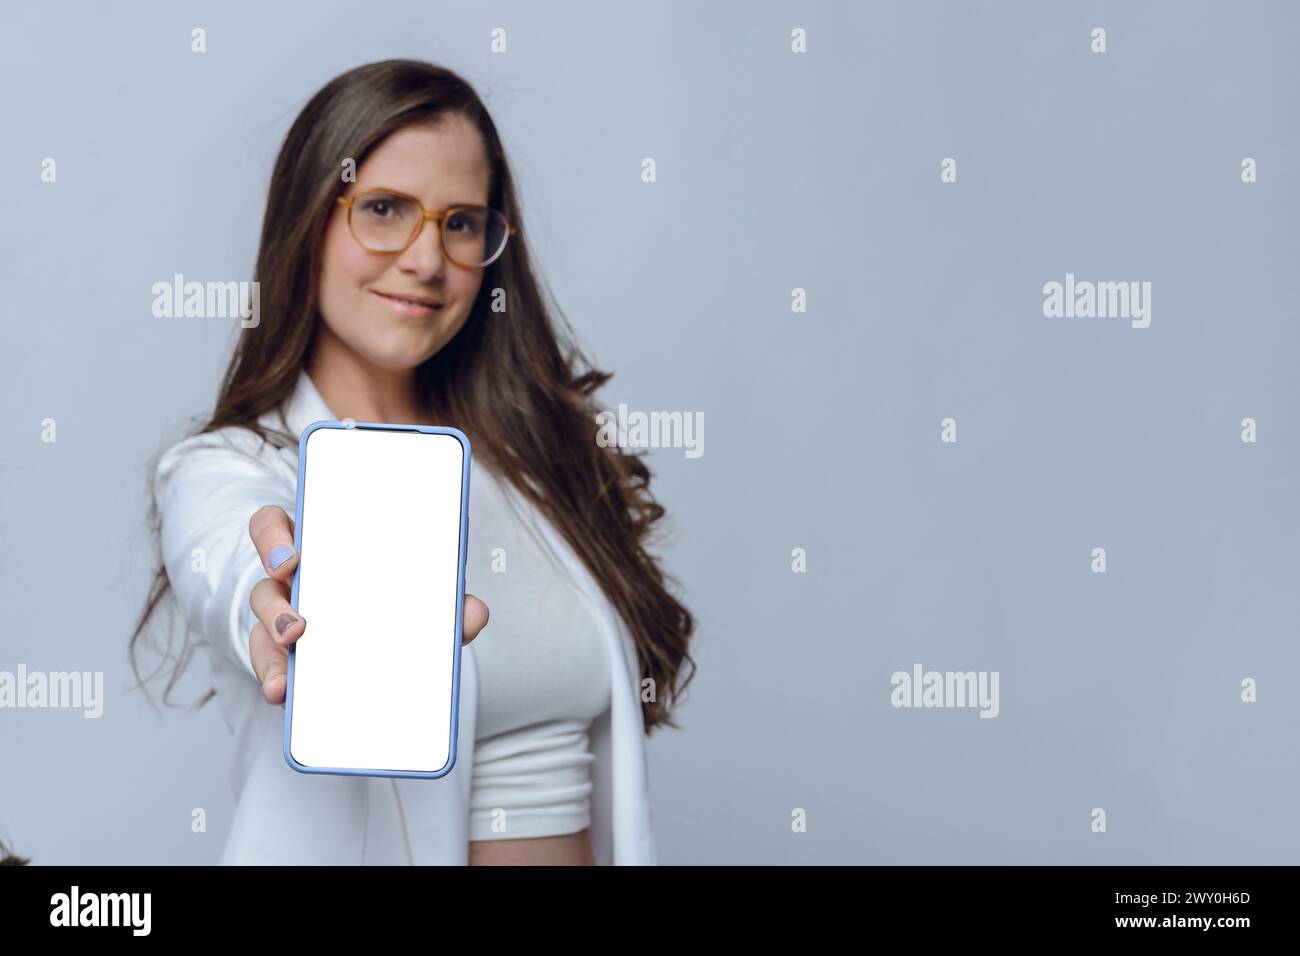 Altina junge Frau lächelt unscharf mit ausgestreckter Hand, zeigt mit ihrer Hand weißen Bildschirm des Telefons, Fokus auf Telefon, Studio-Aufnahme mit weißem Hintergrund Stockfoto